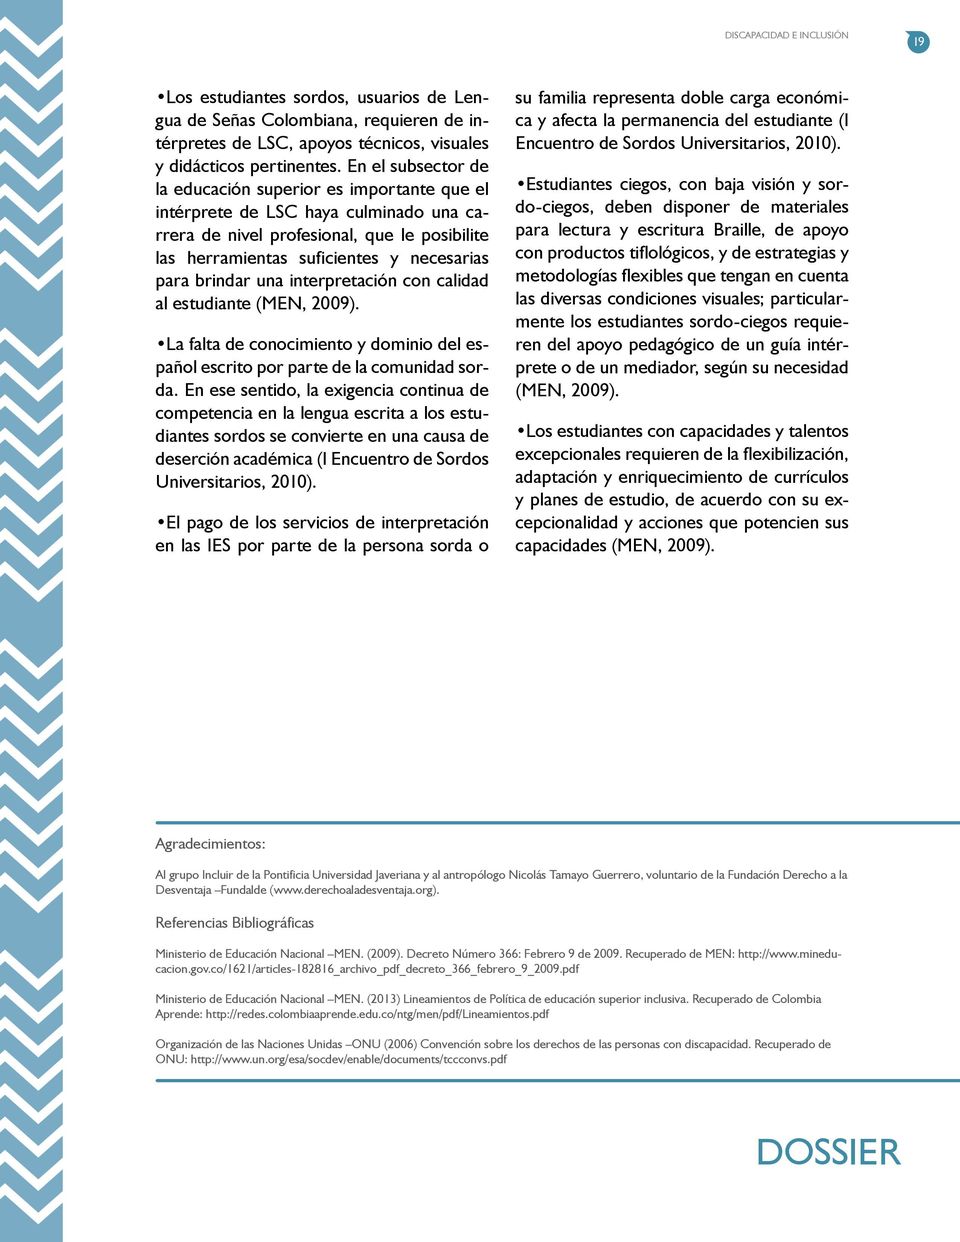 brindar una interpretación con calidad al estudiante (MEN, 2009). La falta de conocimiento y dominio del español escrito por parte de la comunidad sorda.